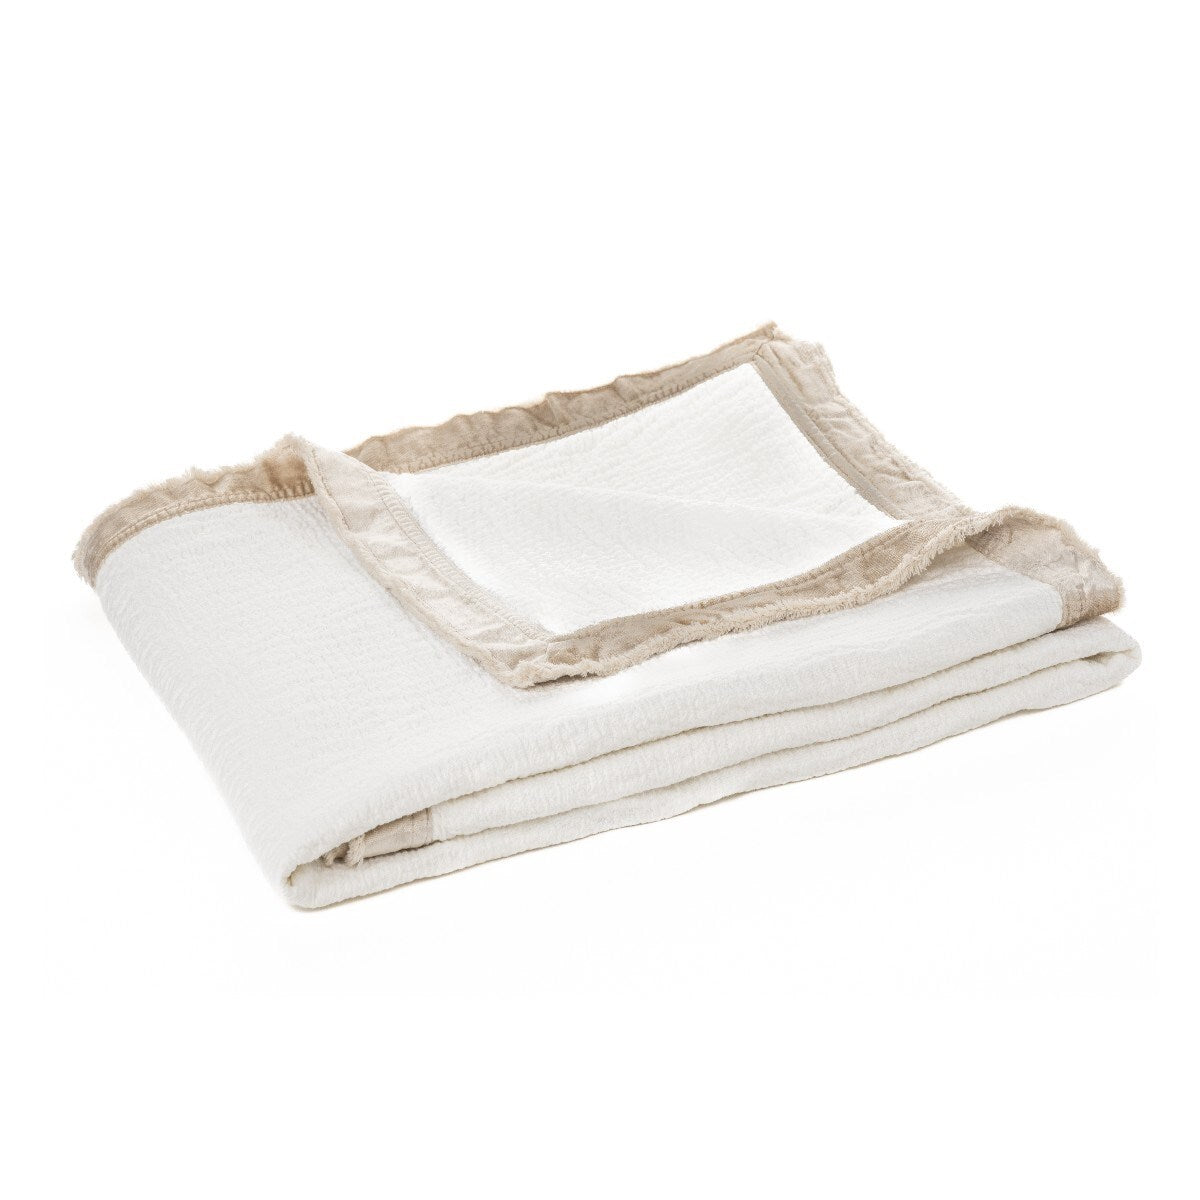 Enoki Cream 100% Cotton Throw Blanket 50"x60"